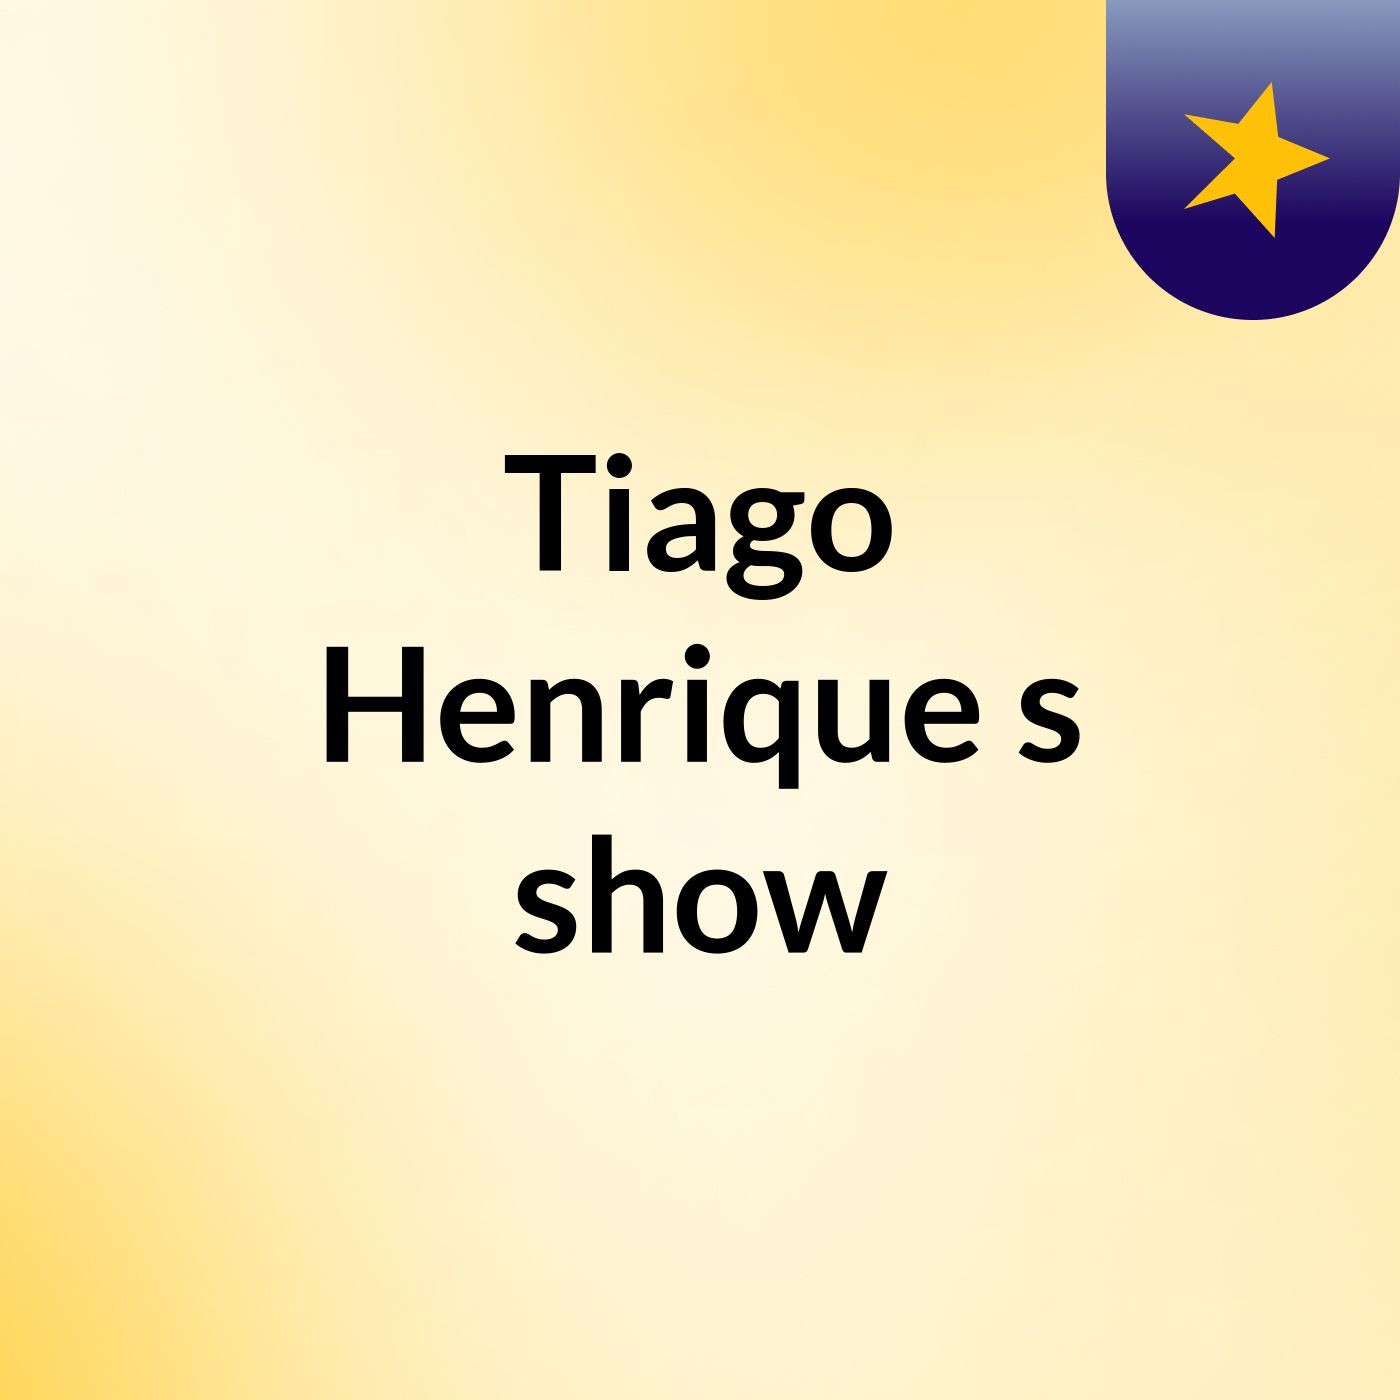 Tiago Henrique's show